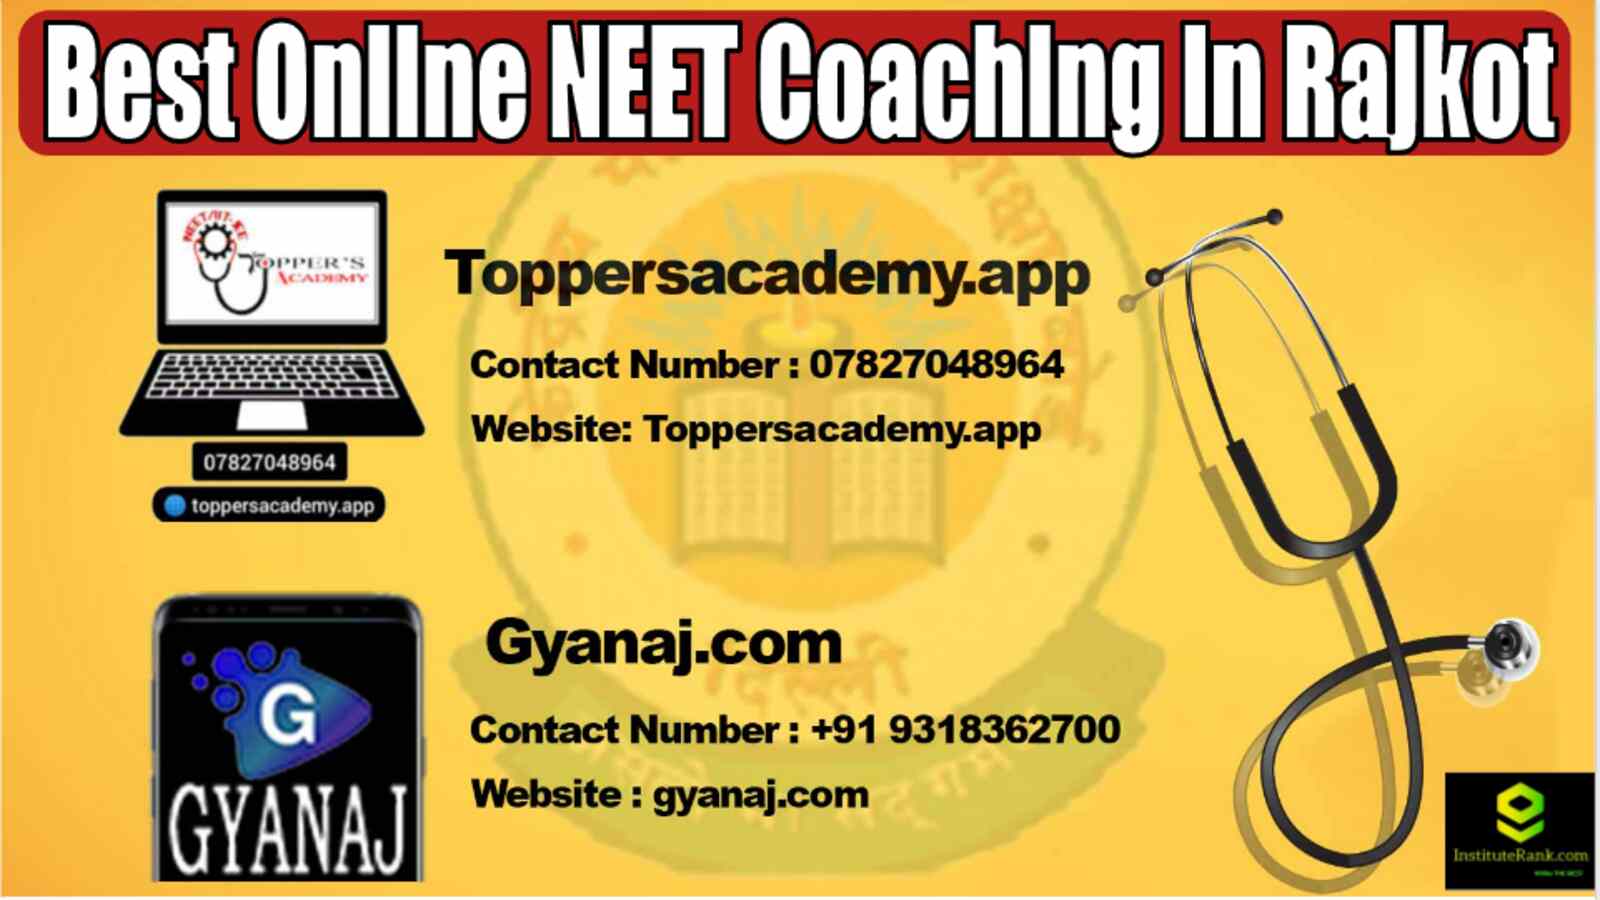 Best Online NEET Coaching in Rajkot 2022